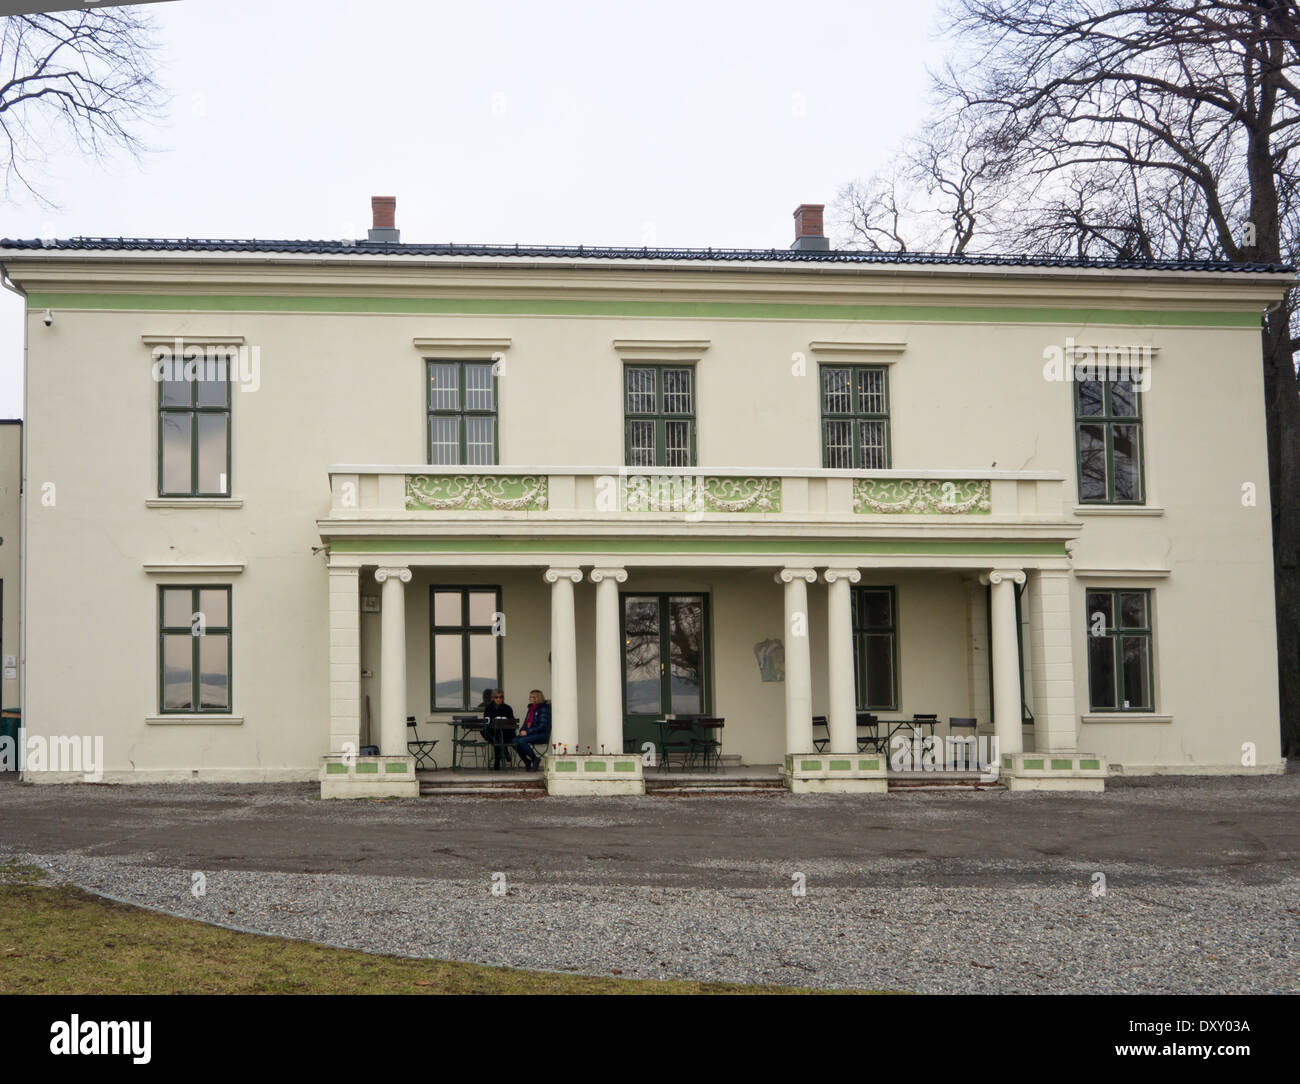 Galleri F 15, galerie d'art avec des expositions avec des artistes contemporains dans l'ancienne maison de ferme à Jeløya Moss, Norvège Banque D'Images